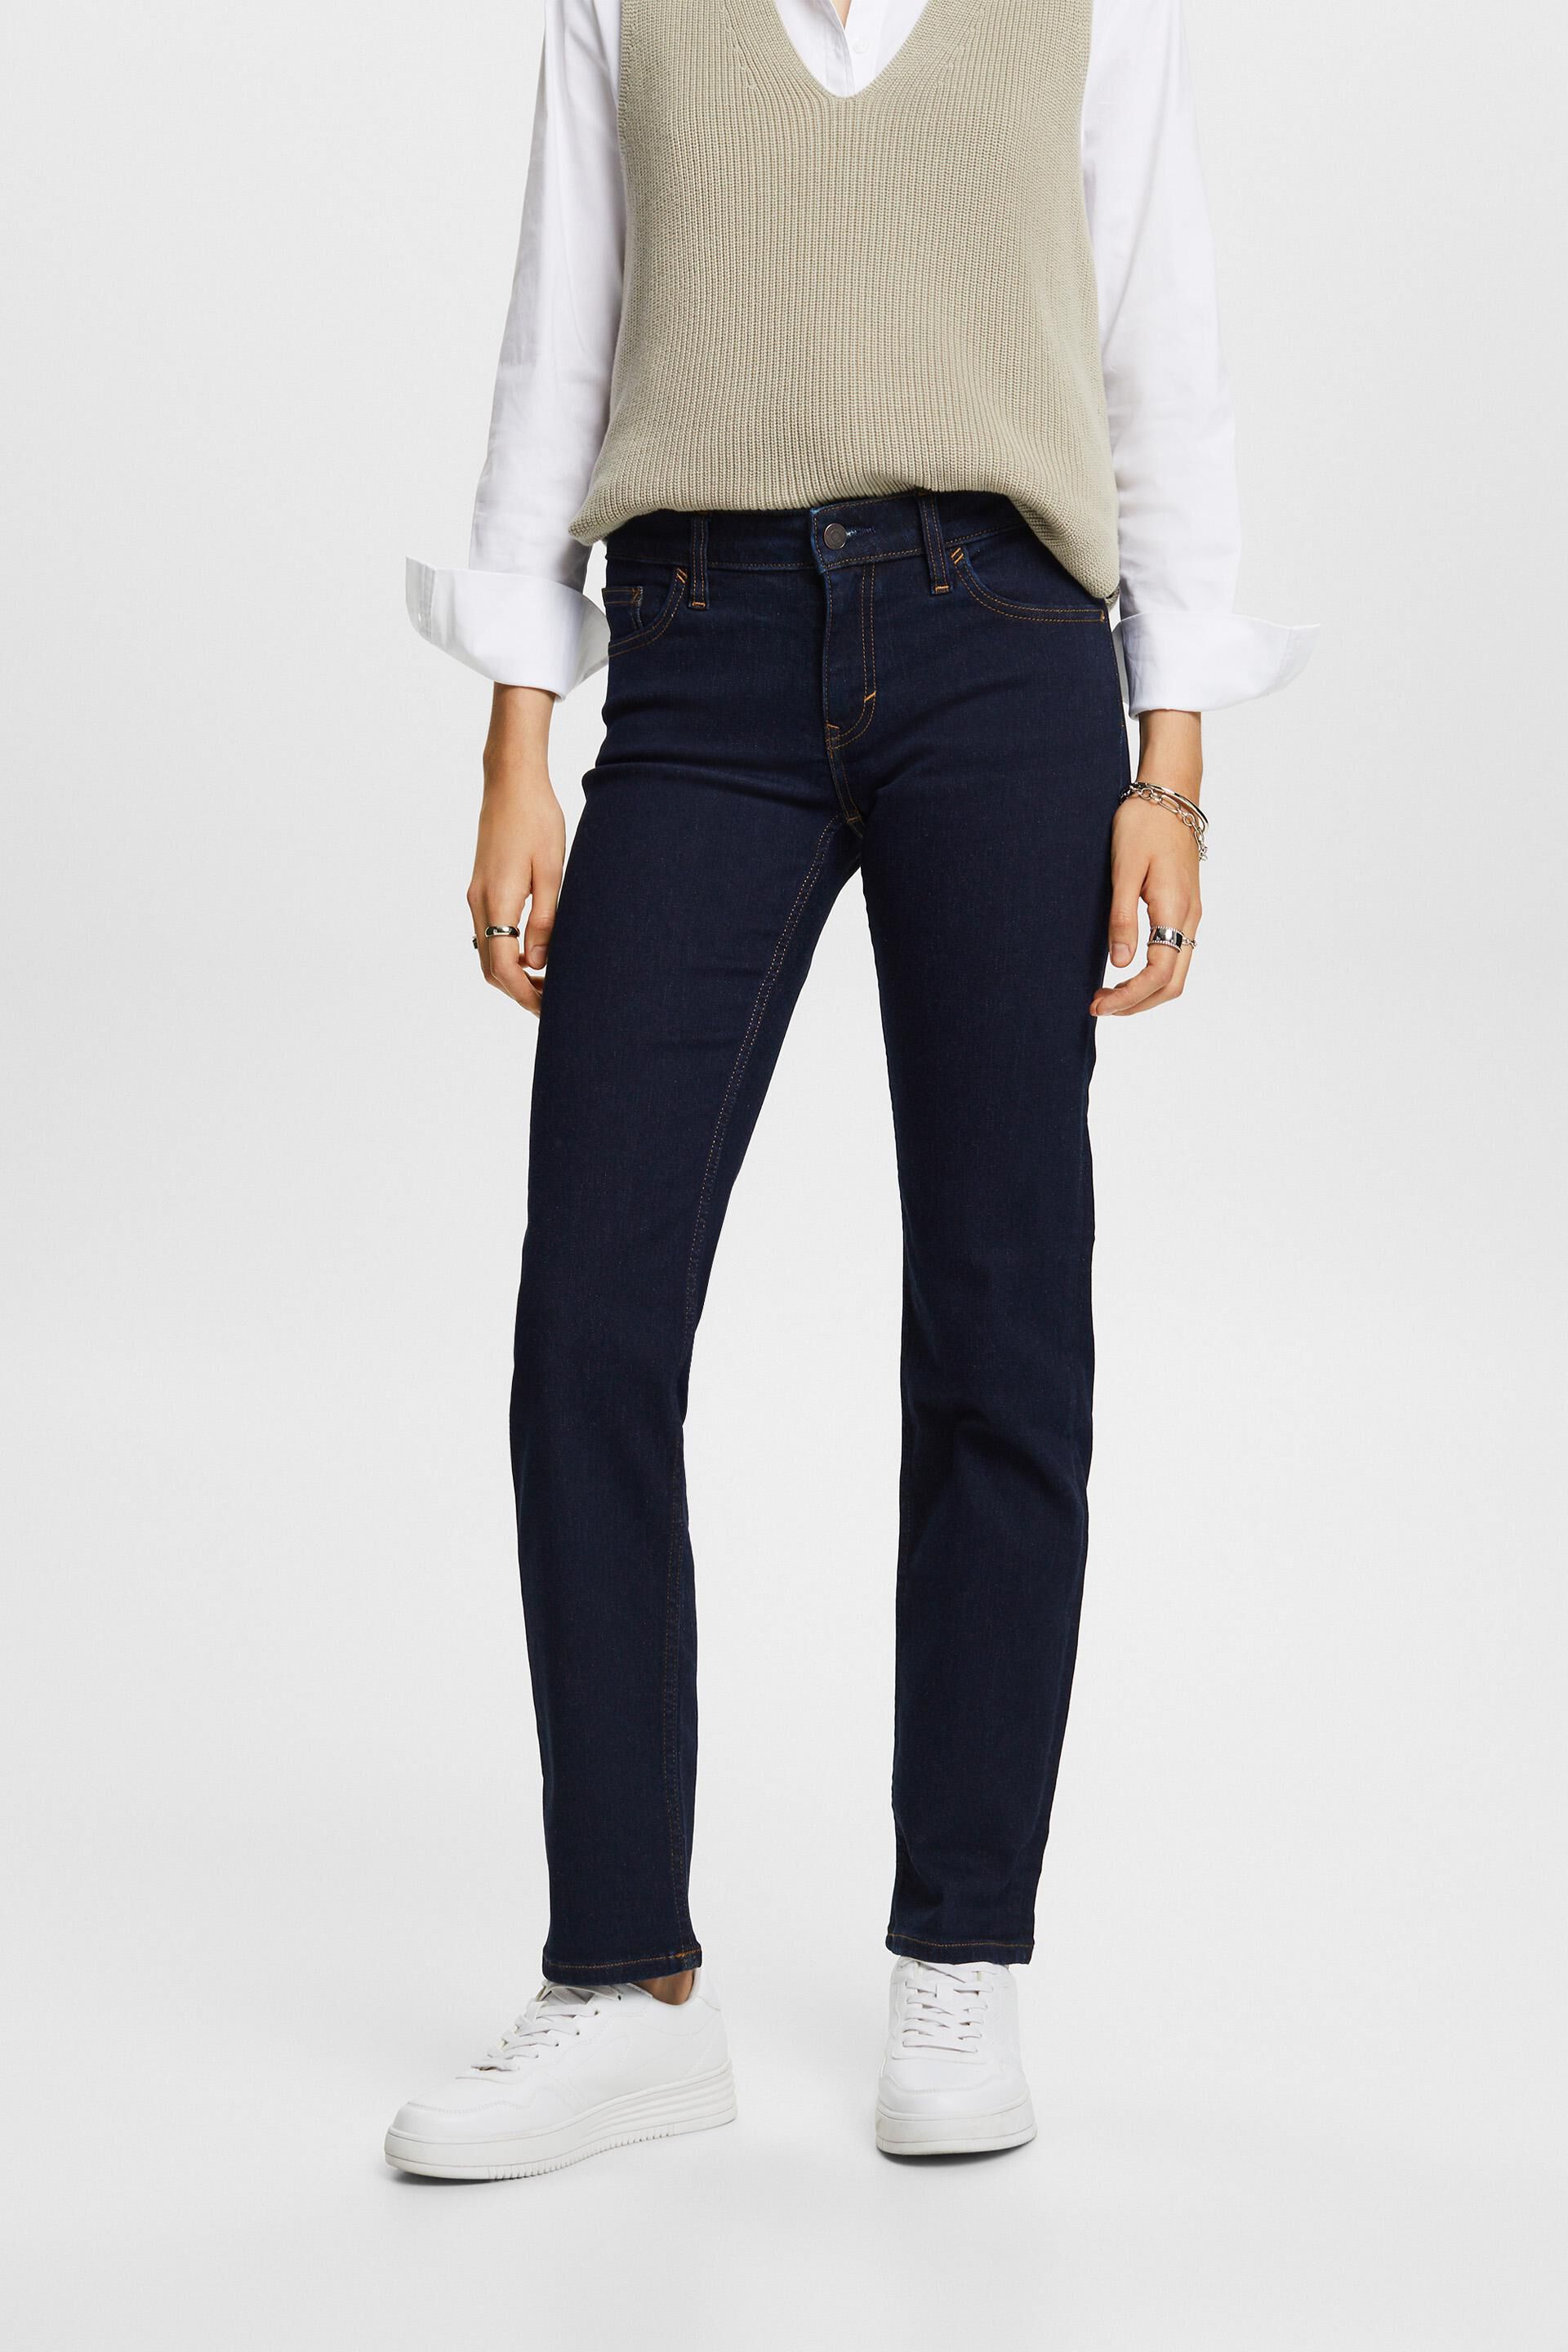 Esprit blend jeans, Straight cotton leg stretch